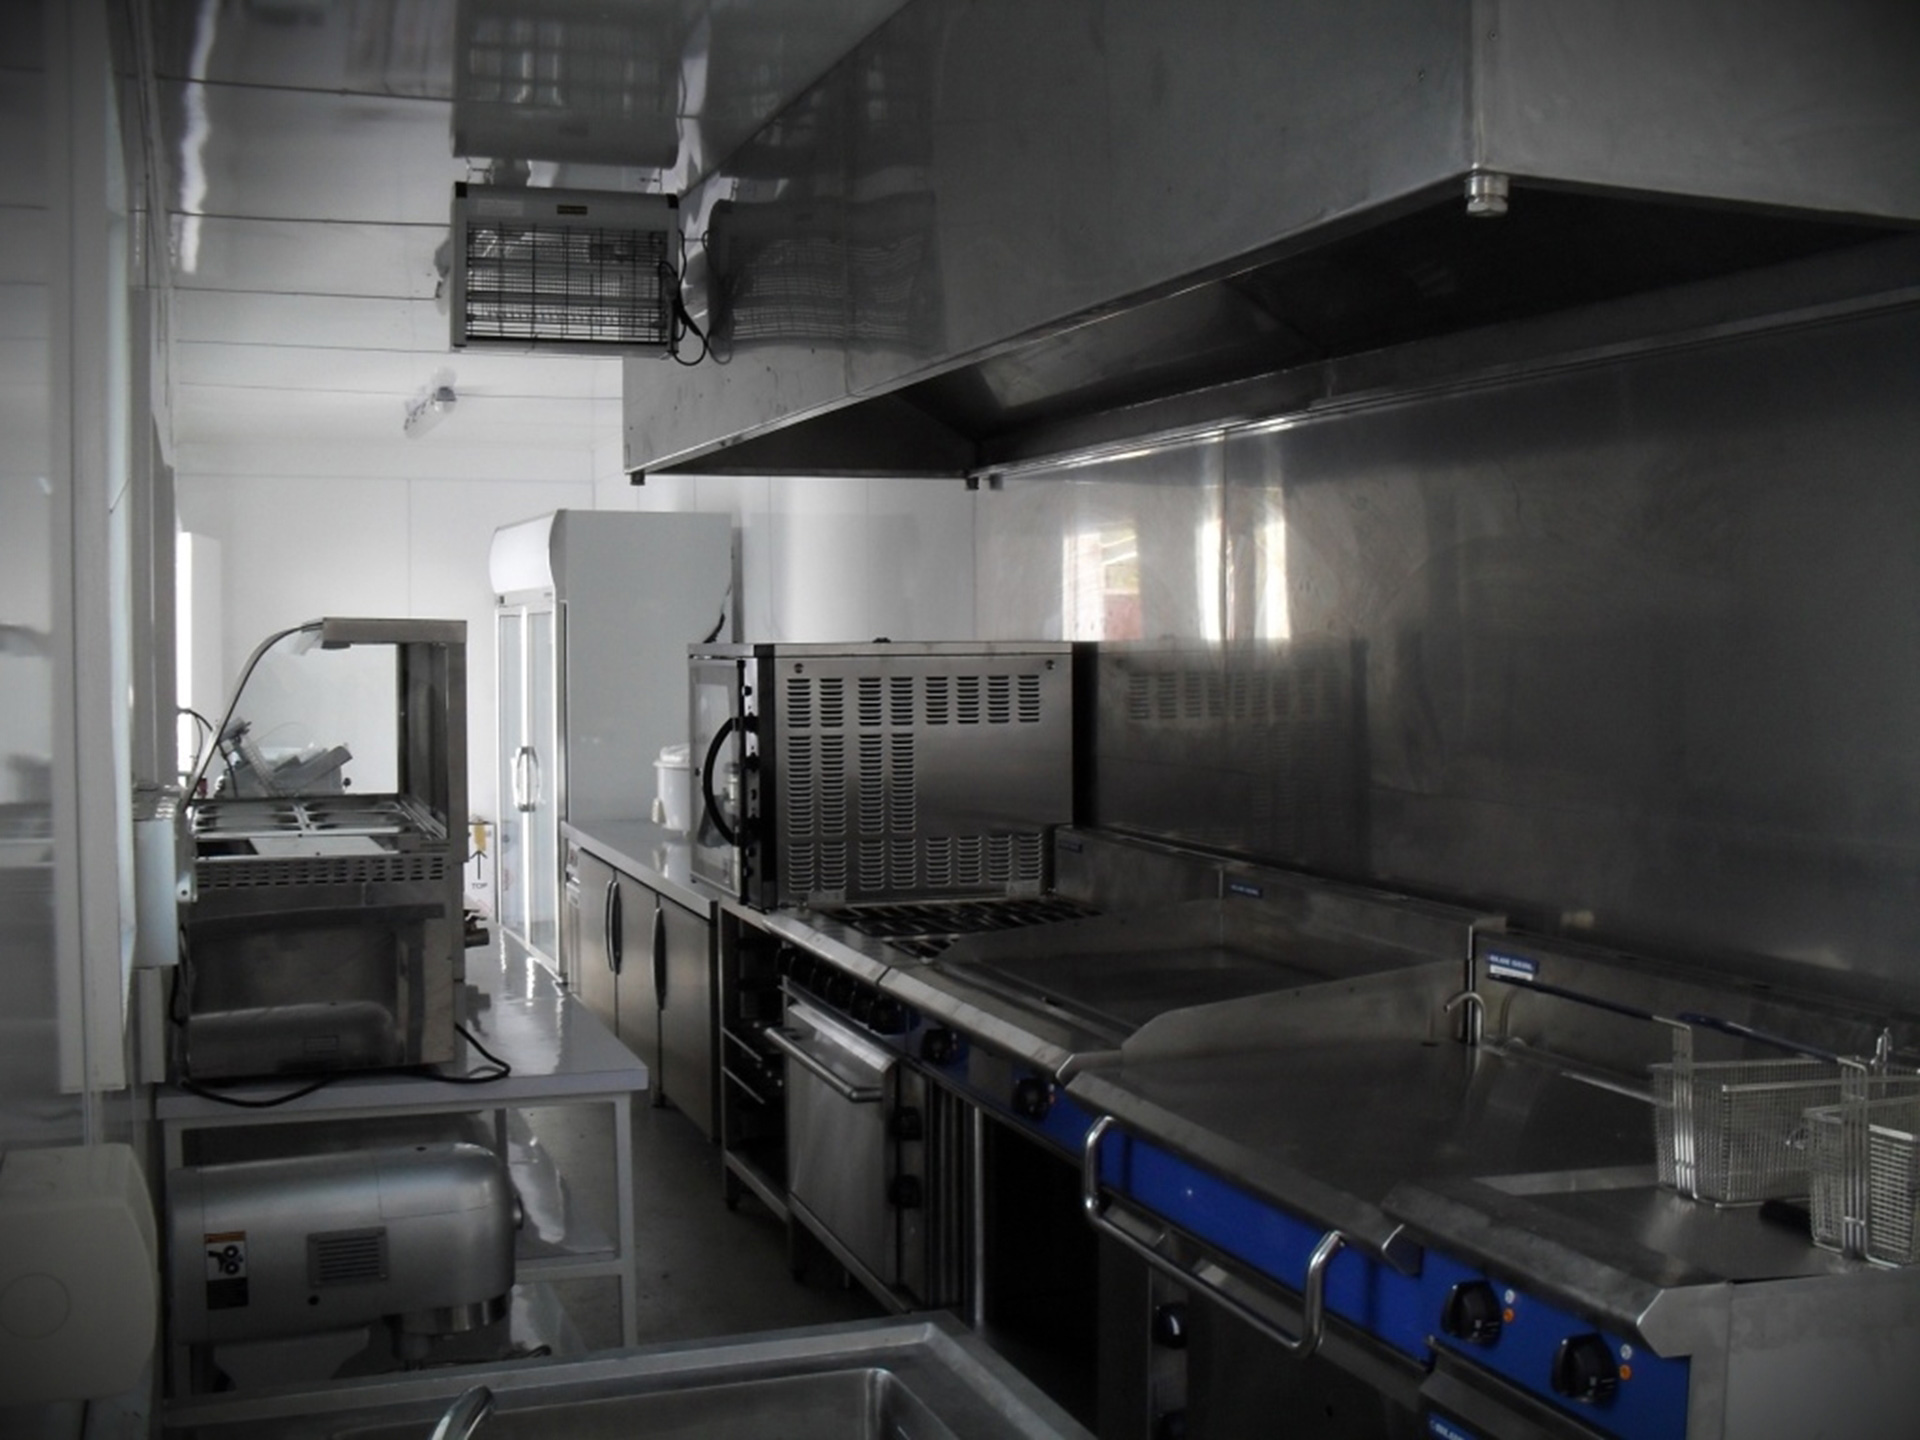 Kitchen Unit, portable kitchens, portable commercial kitchen